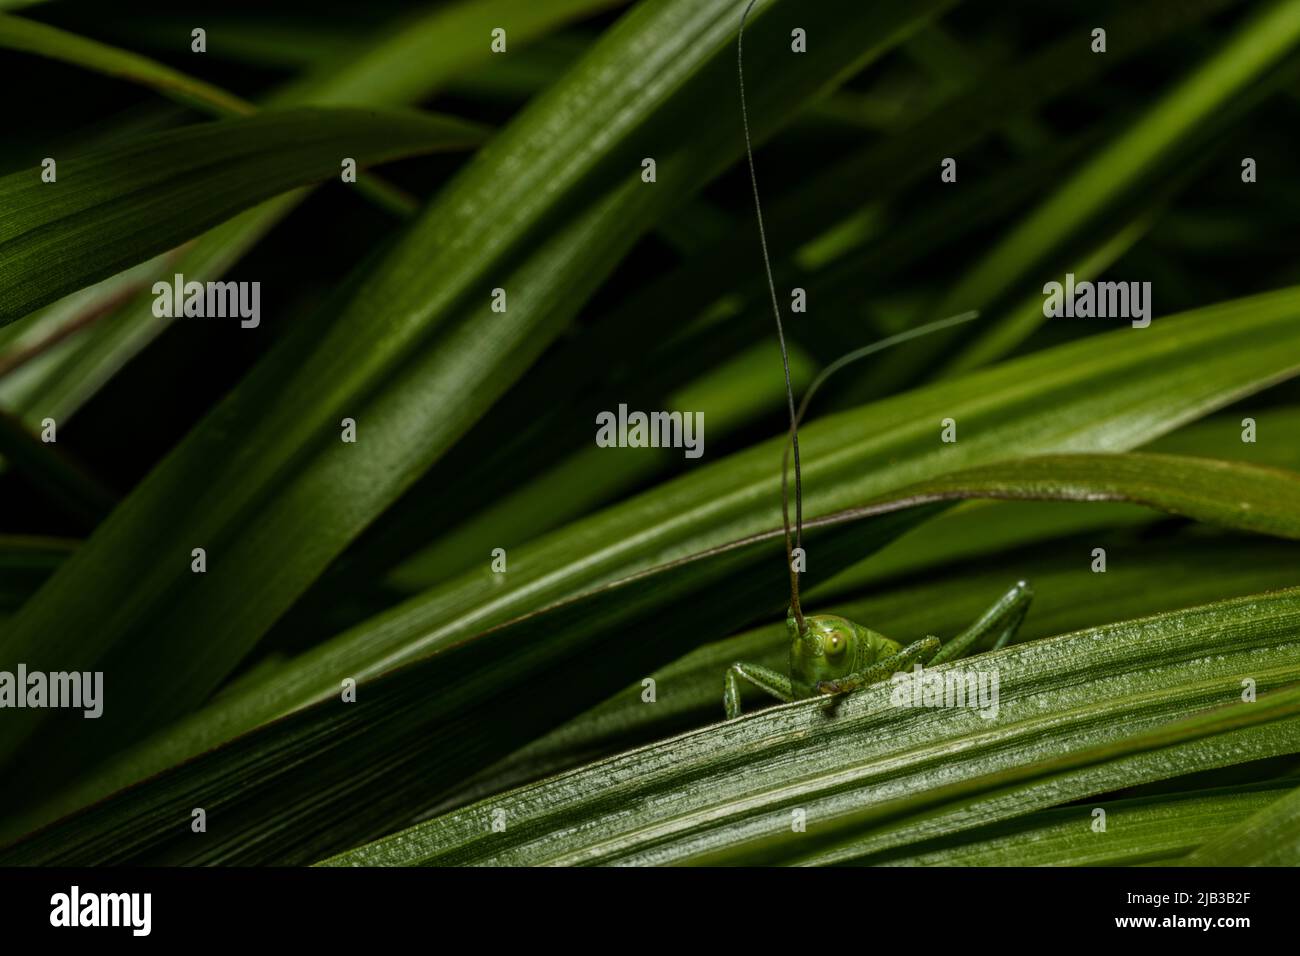 Nahaufnahme einer grünen Heuschrecke, die auf einem grünen Blatt sitzt. Grasshopper in der Natur. Stockfoto